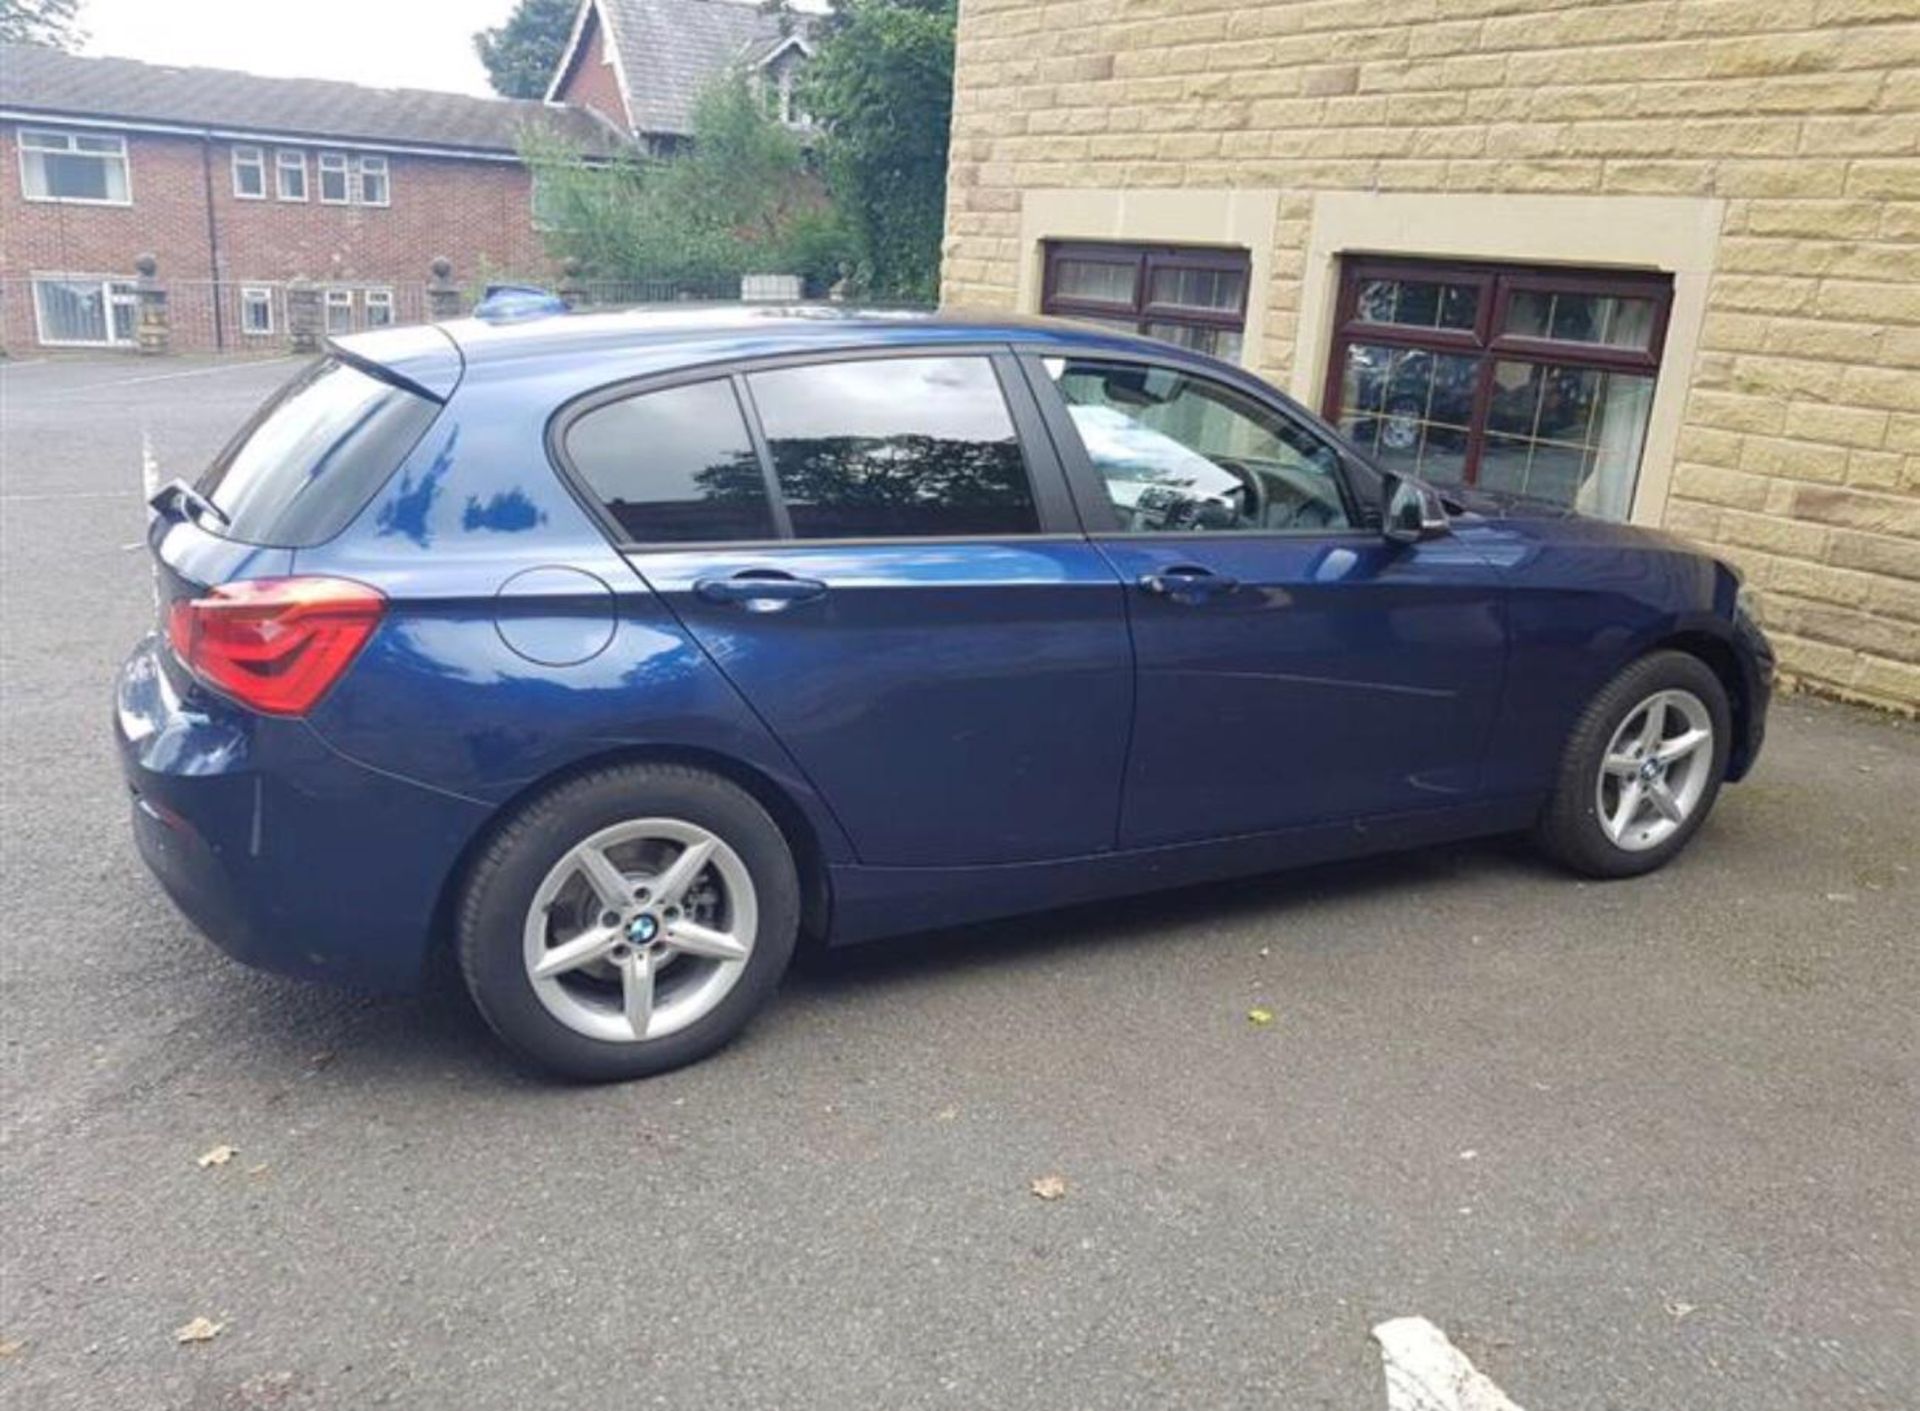 2018/67 REG BMW 118D SE AUTOMATIC BLUE DIESEL 5 DOOR HATCHBACK, SHOWING 0 FORMER KEEPERS *PLUS VAT* - Image 7 of 18